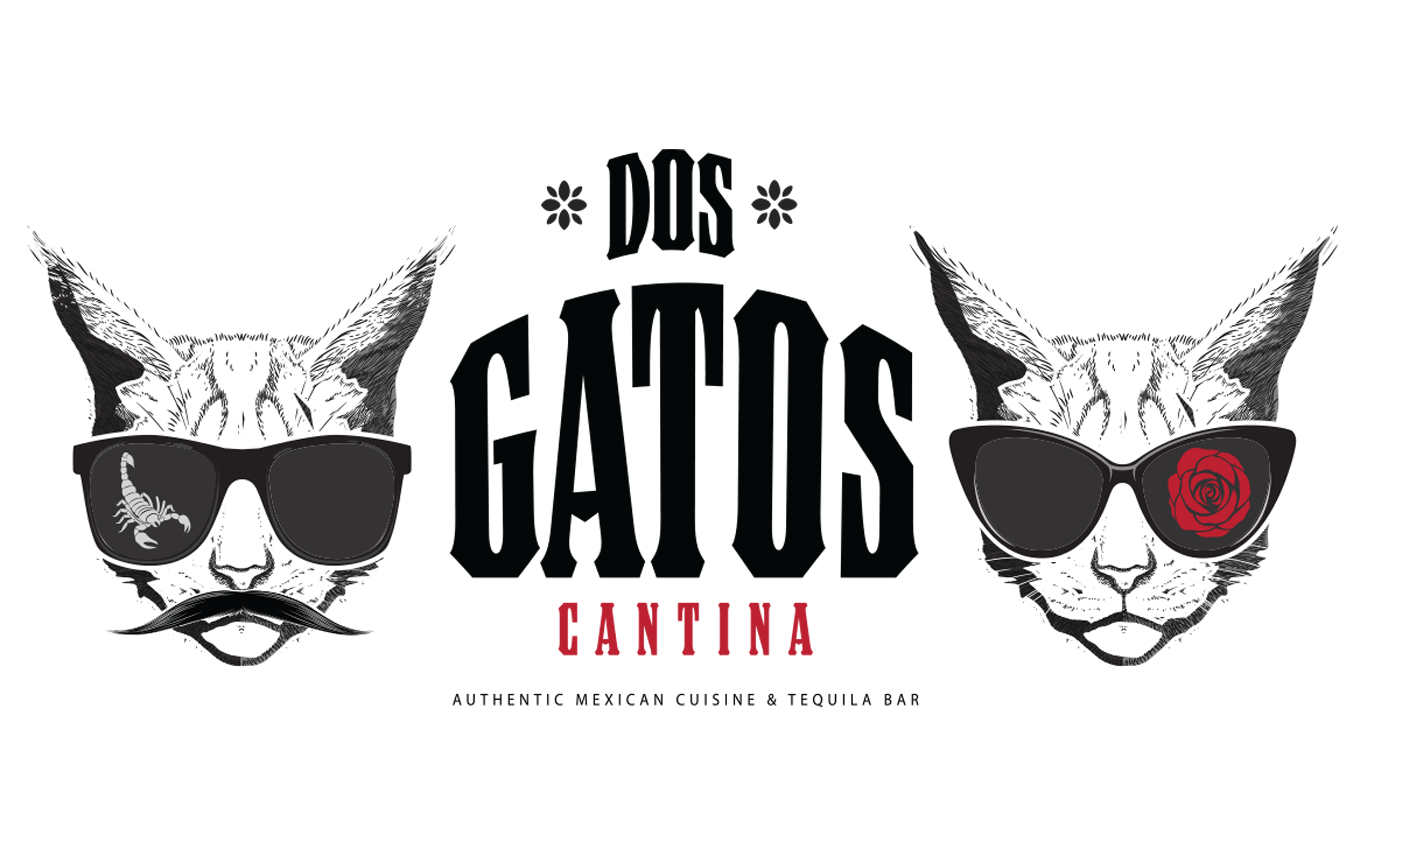 dos-gatos-cantina-logo